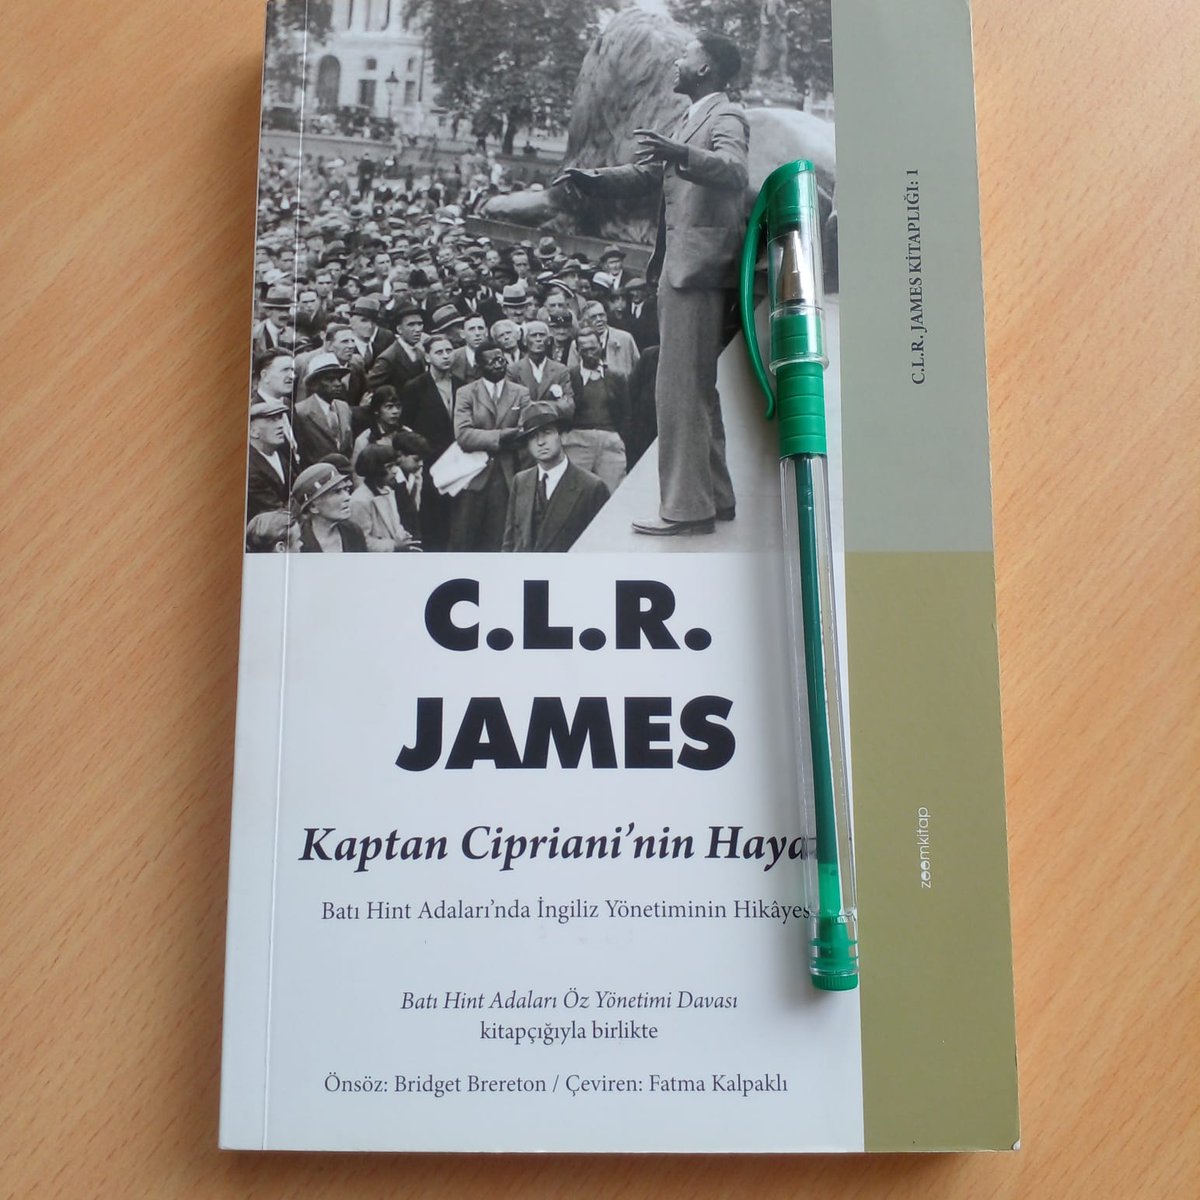 'Kaptan Cipriani'nin Hayatı James'in Trinidad demokratik hareketinin tarihinde öncü rol oynamış işçi lideri Arthur Andrew Cipriani'nin hayatını ve İngiliz sömürgeciliğini konu aldığı ilk eseridir.'

C. L. R. James / Kaptan Cipriani'nin Hayatı